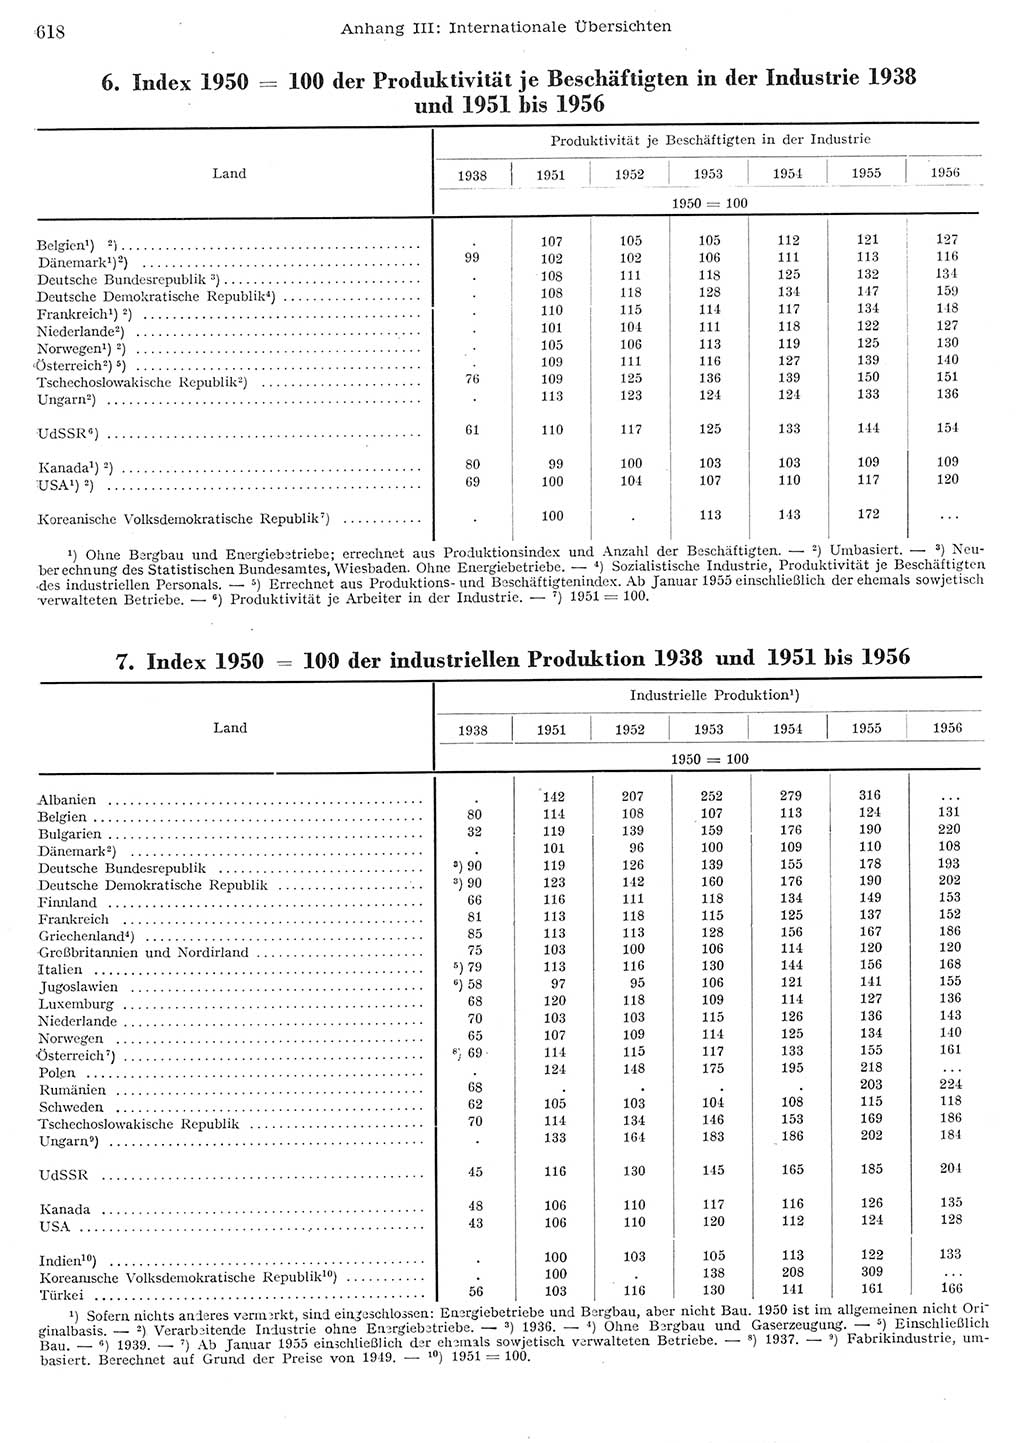 Statistisches Jahrbuch der Deutschen Demokratischen Republik (DDR) 1956, Seite 618 (Stat. Jb. DDR 1956, S. 618)